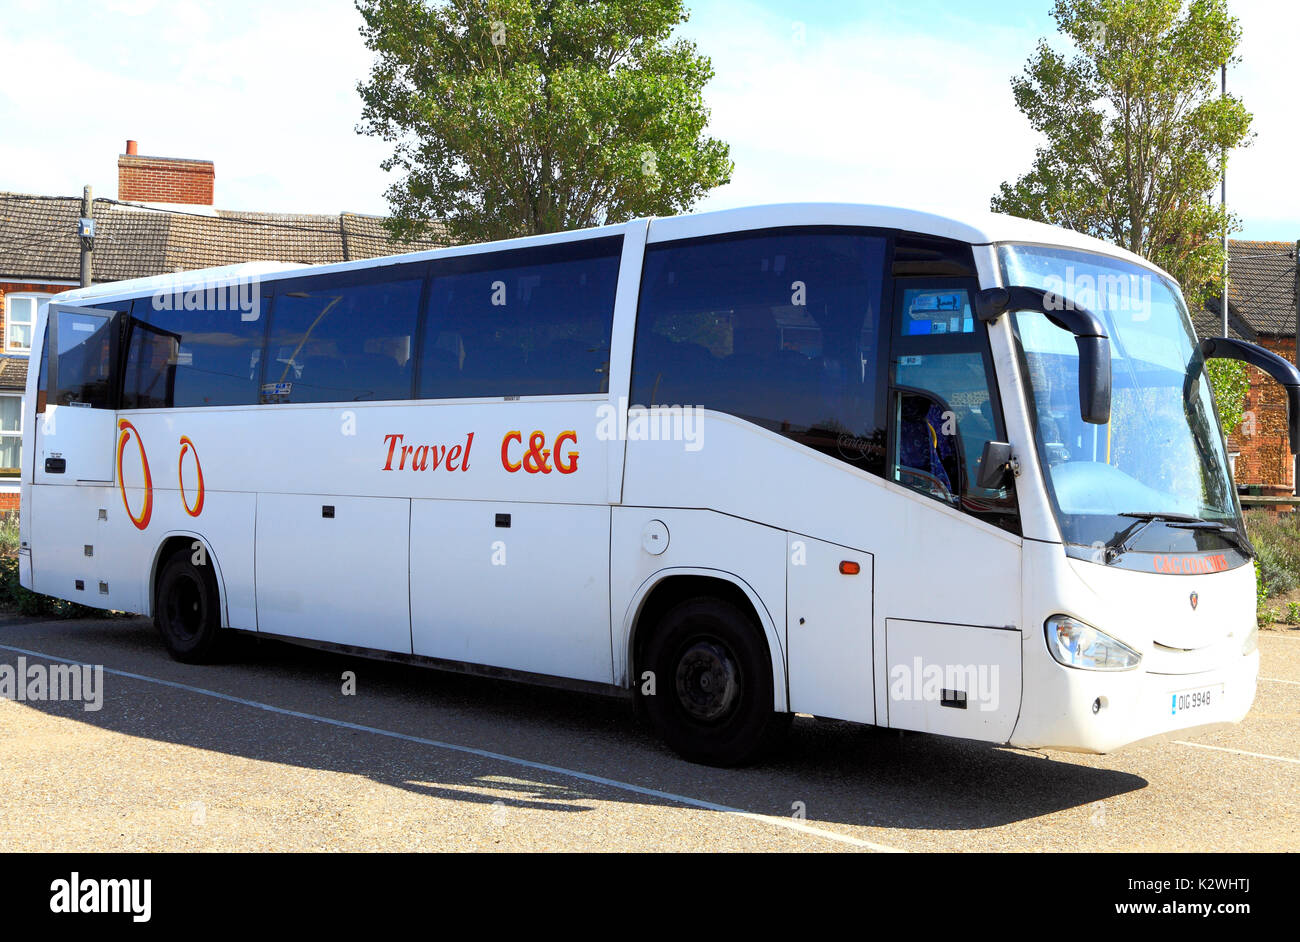 C&G, C & G, voyage en bus, autocars, excursions, voyage, excursion, excursions, vacances, vacances, société, entreprises, England, UK Banque D'Images